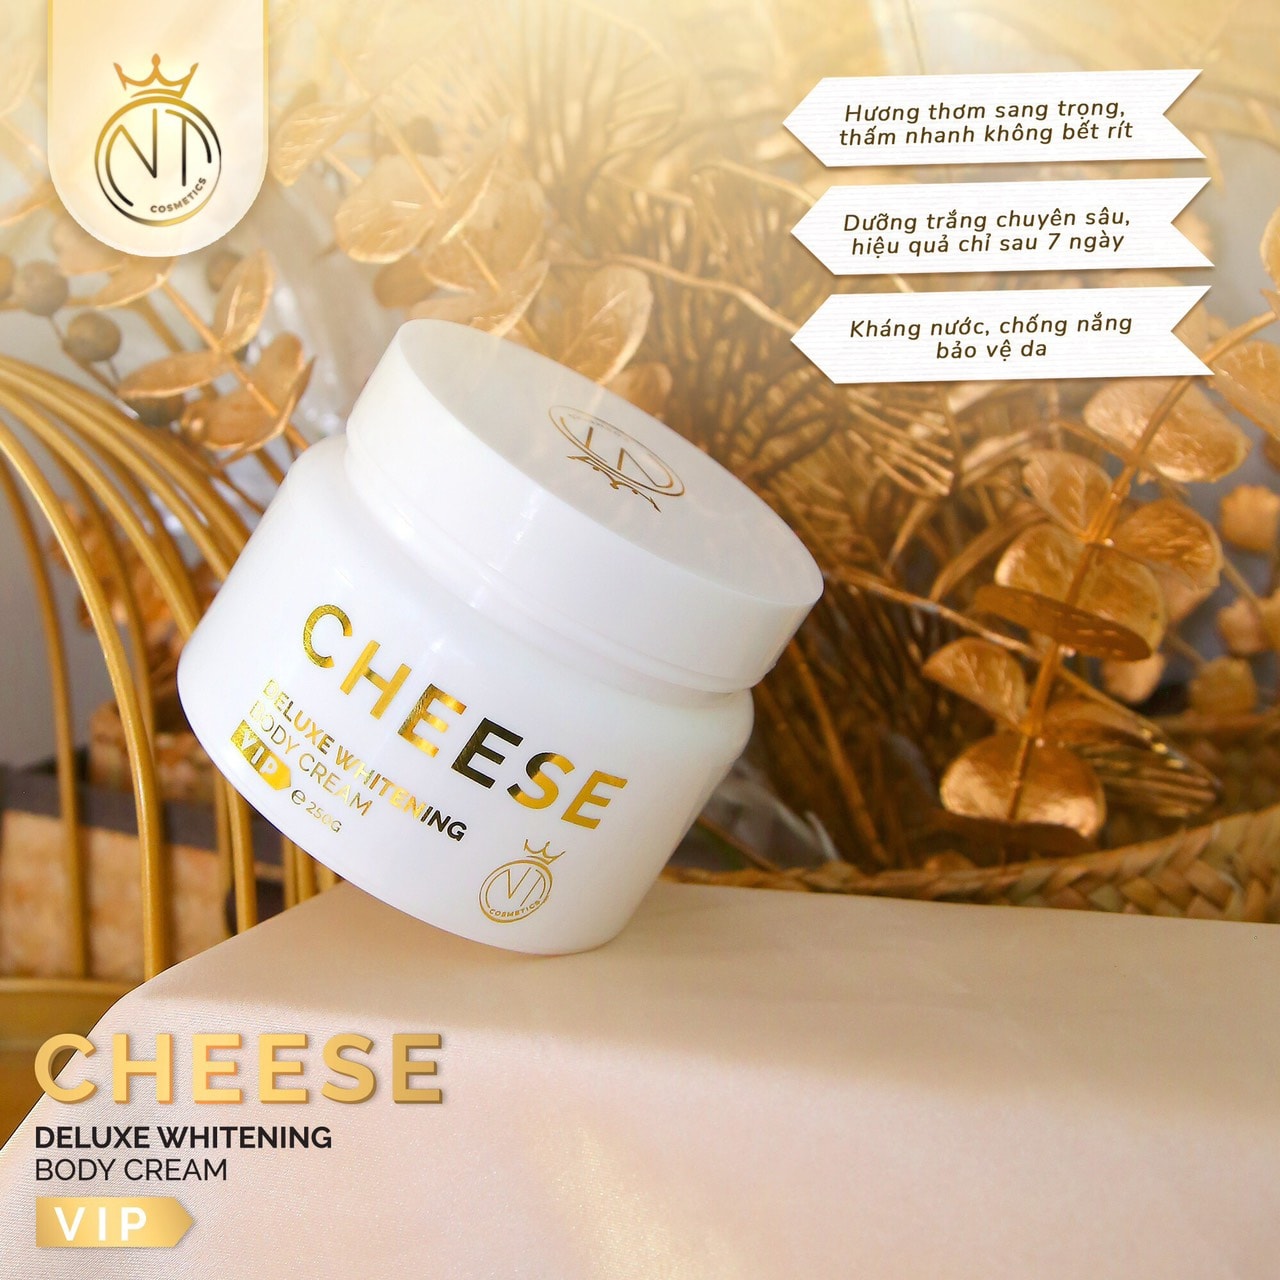 Dùng kem body Cheese nhà NT Cosmetics bí quyết da xinh xứng đáng có 10 người yêu